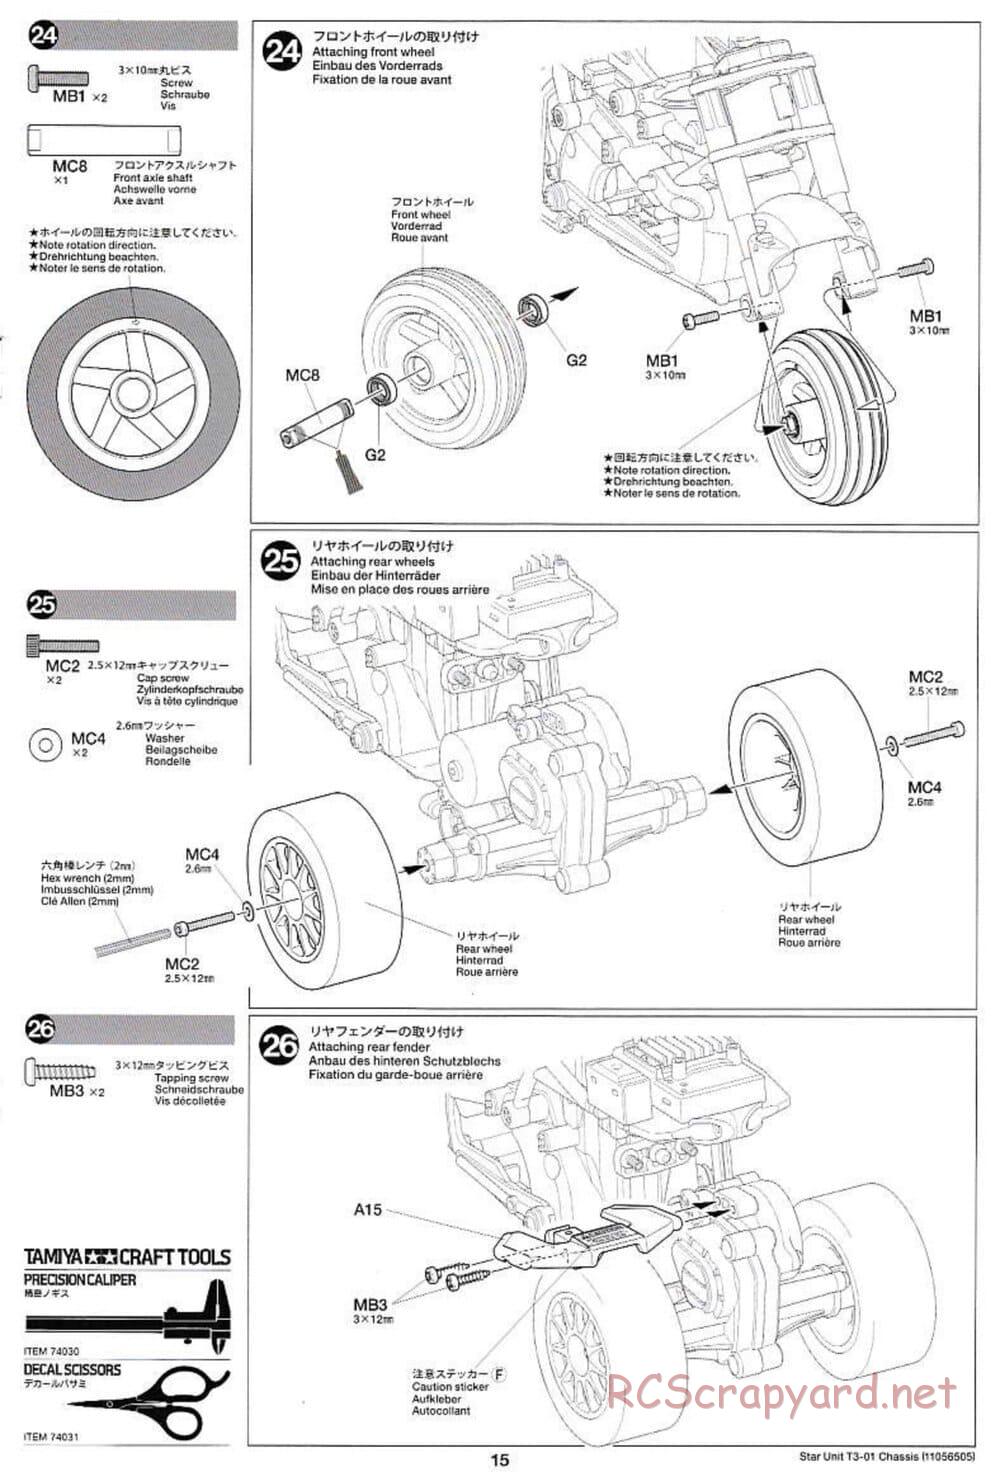 Tamiya - T3-01 Chassis - Manual - Page 15